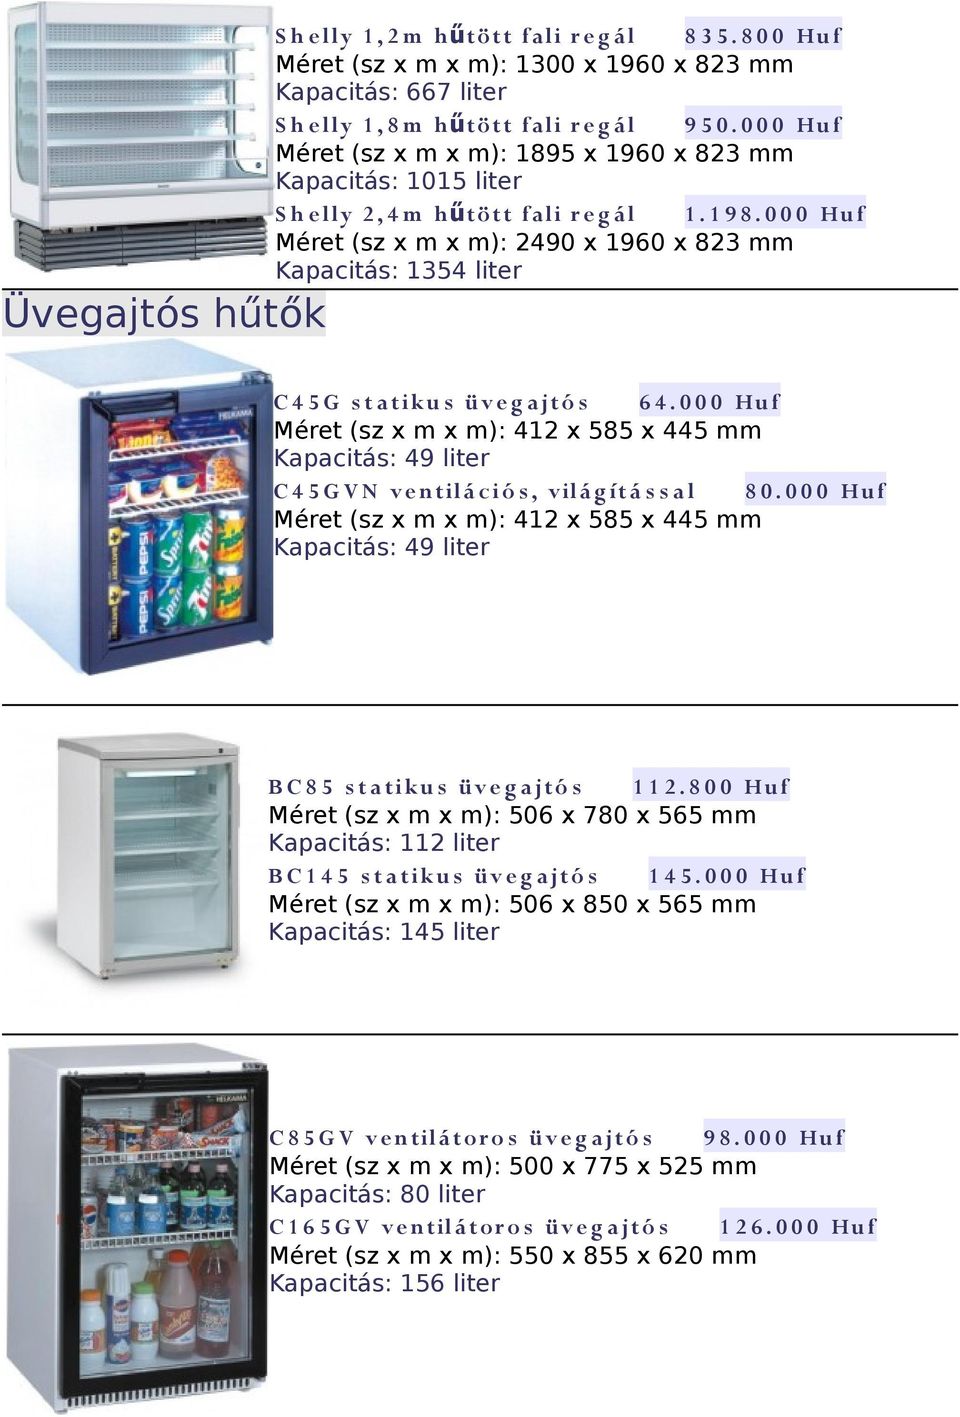 0 0 0 Huf Méret (sz x m x m): 2490 x 1960 x 823 mm Kapacitás: 1354 liter Üvegajtós hűtők C 4 5 G s t a tiku s üv e g ajtó s 6 4.